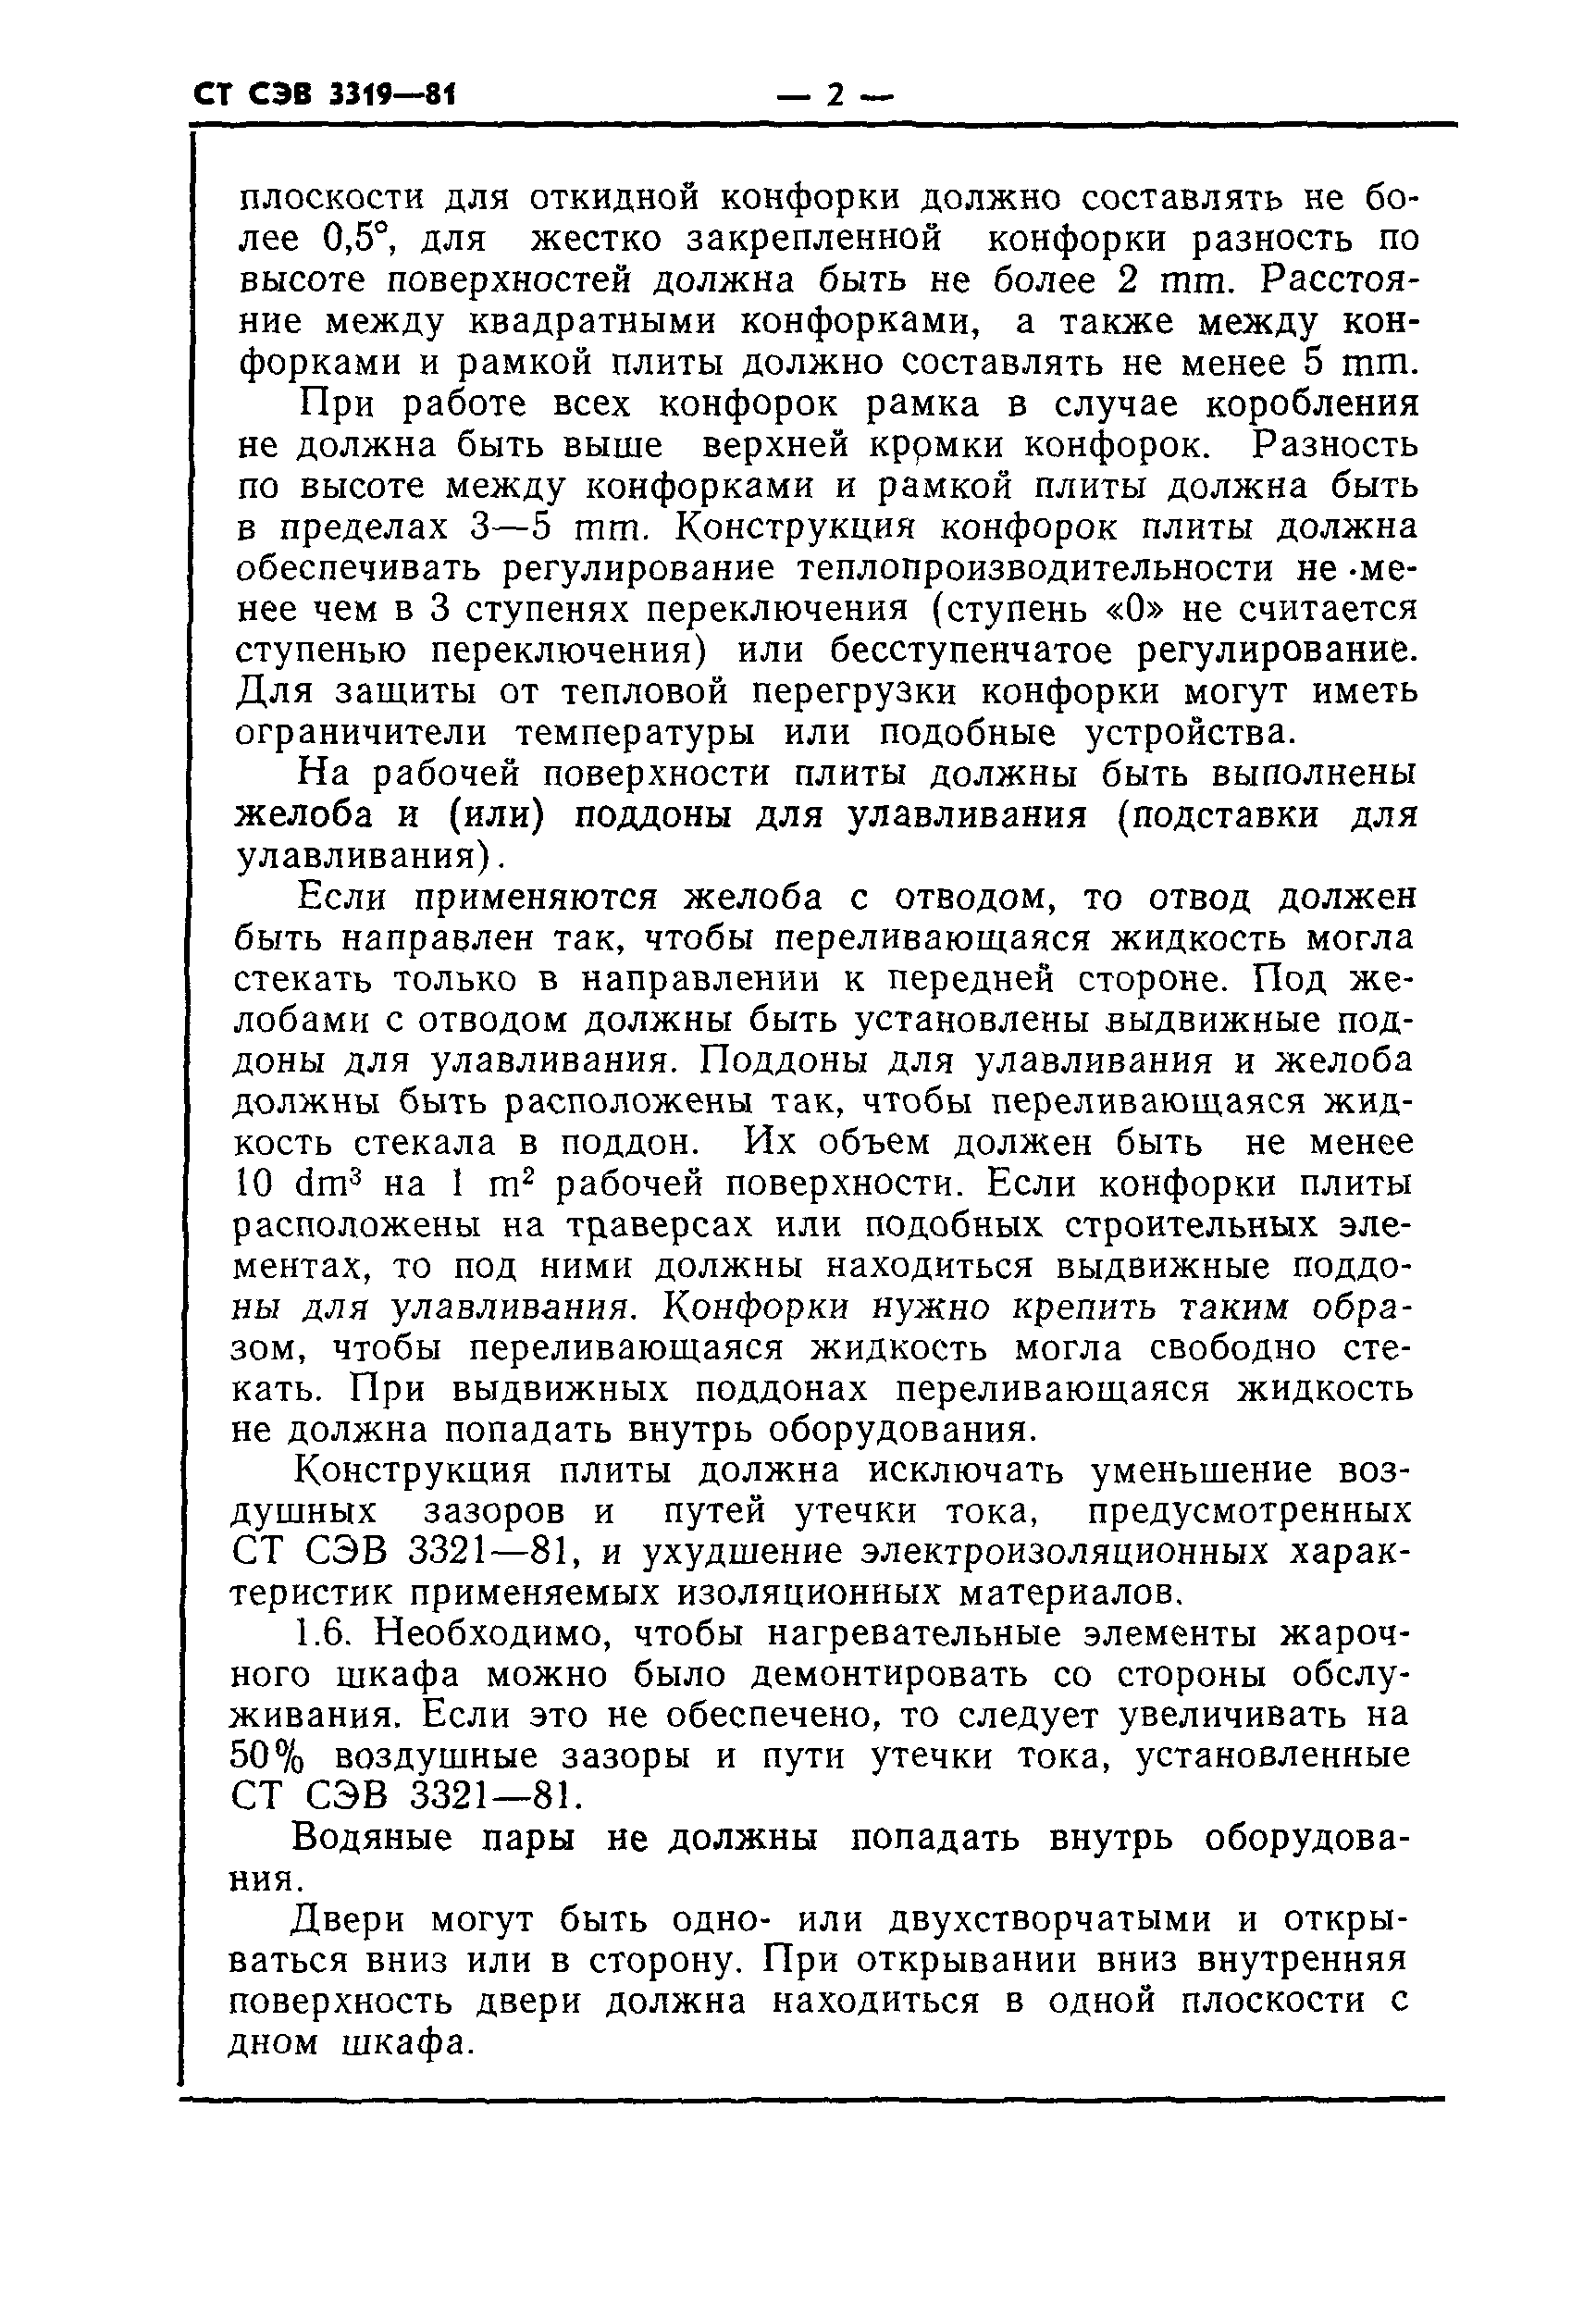 СТ СЭВ 3319-81